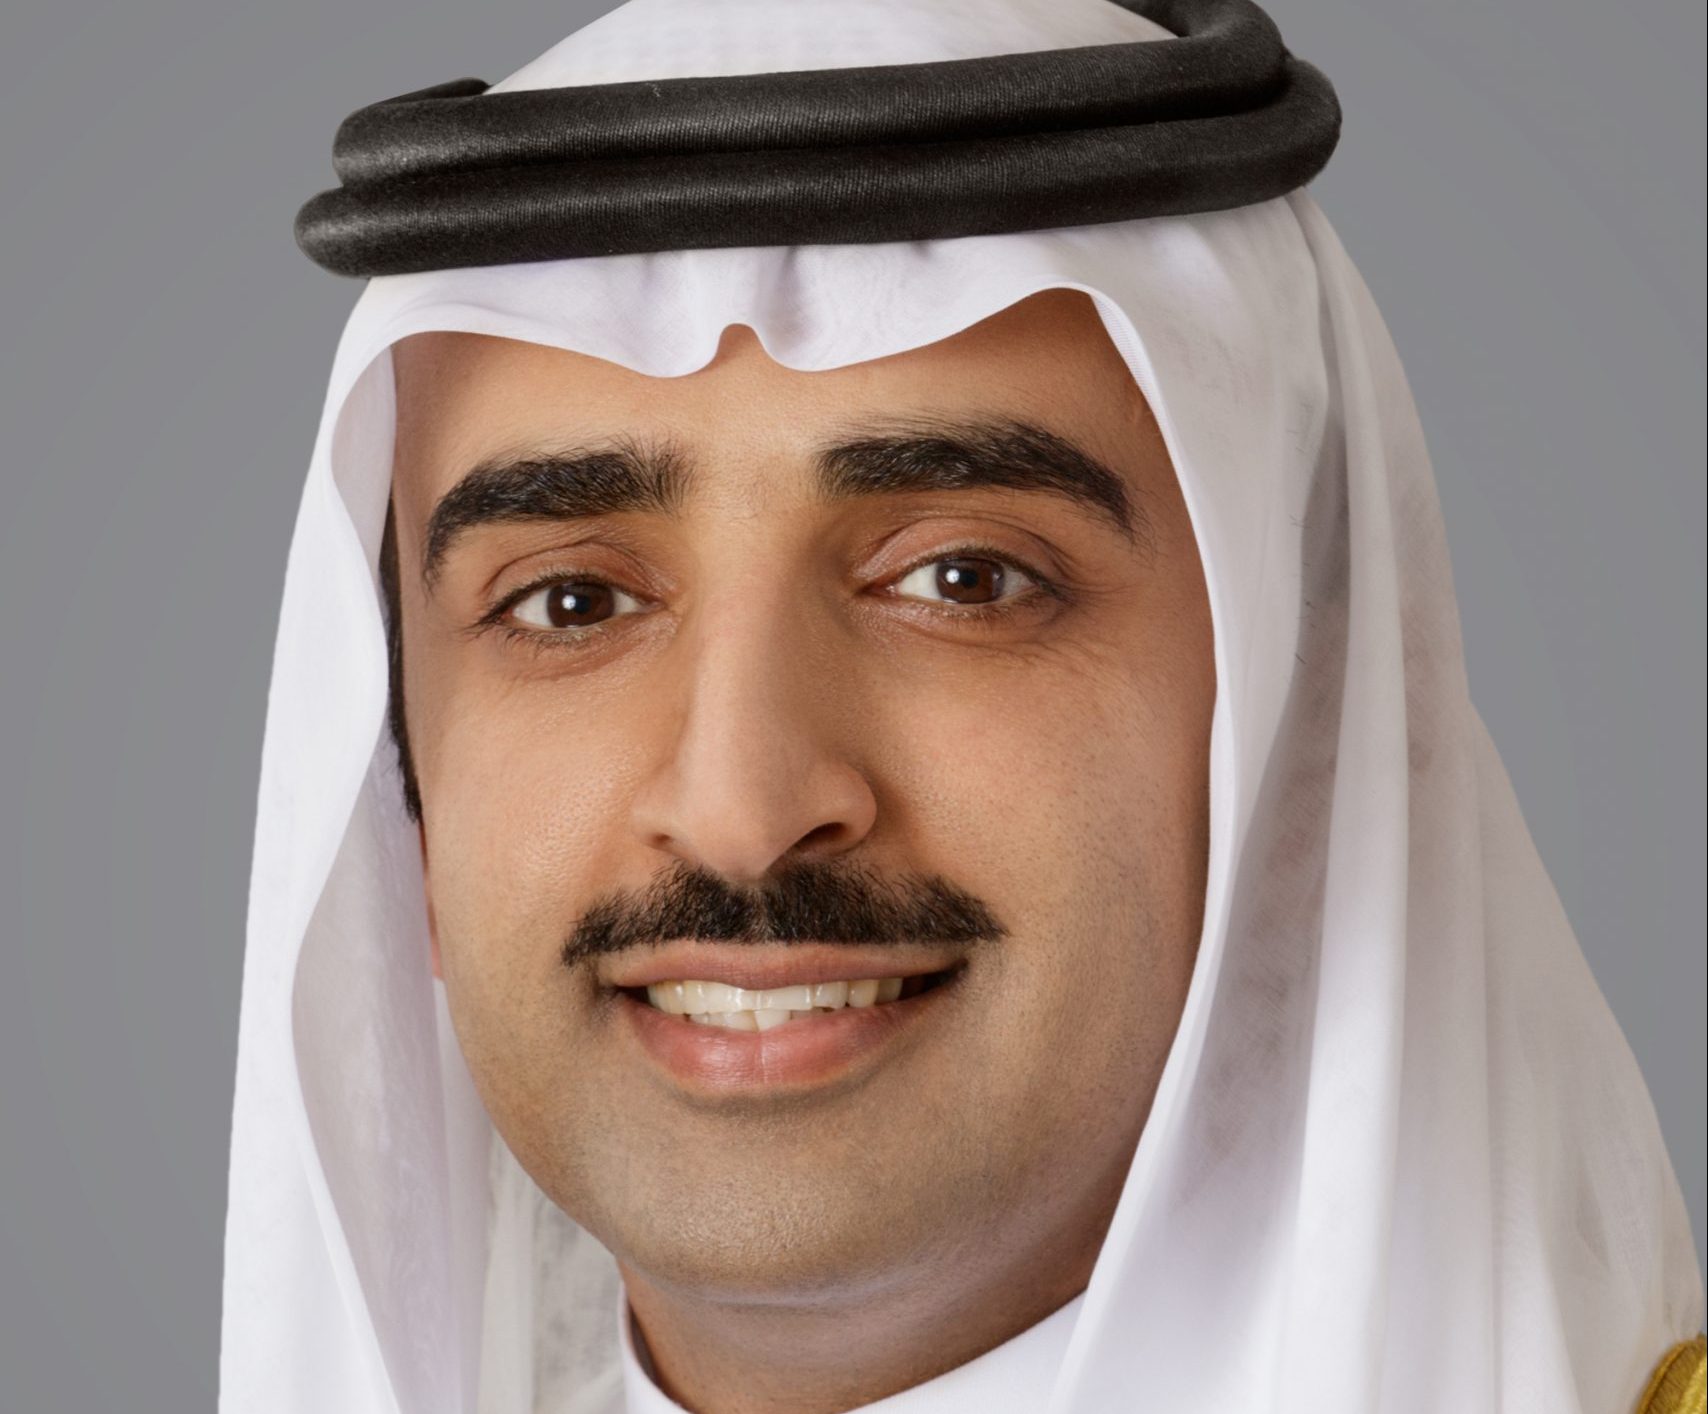 الصورة الرسمية لمعالي الشيخ محمد بن خليفةBashrainNOW.net |معالي وزير النفط يشيد بجهود الكوادر البشرية البحرينية في تطوير المشاريع التنموية في مملكة البحرين